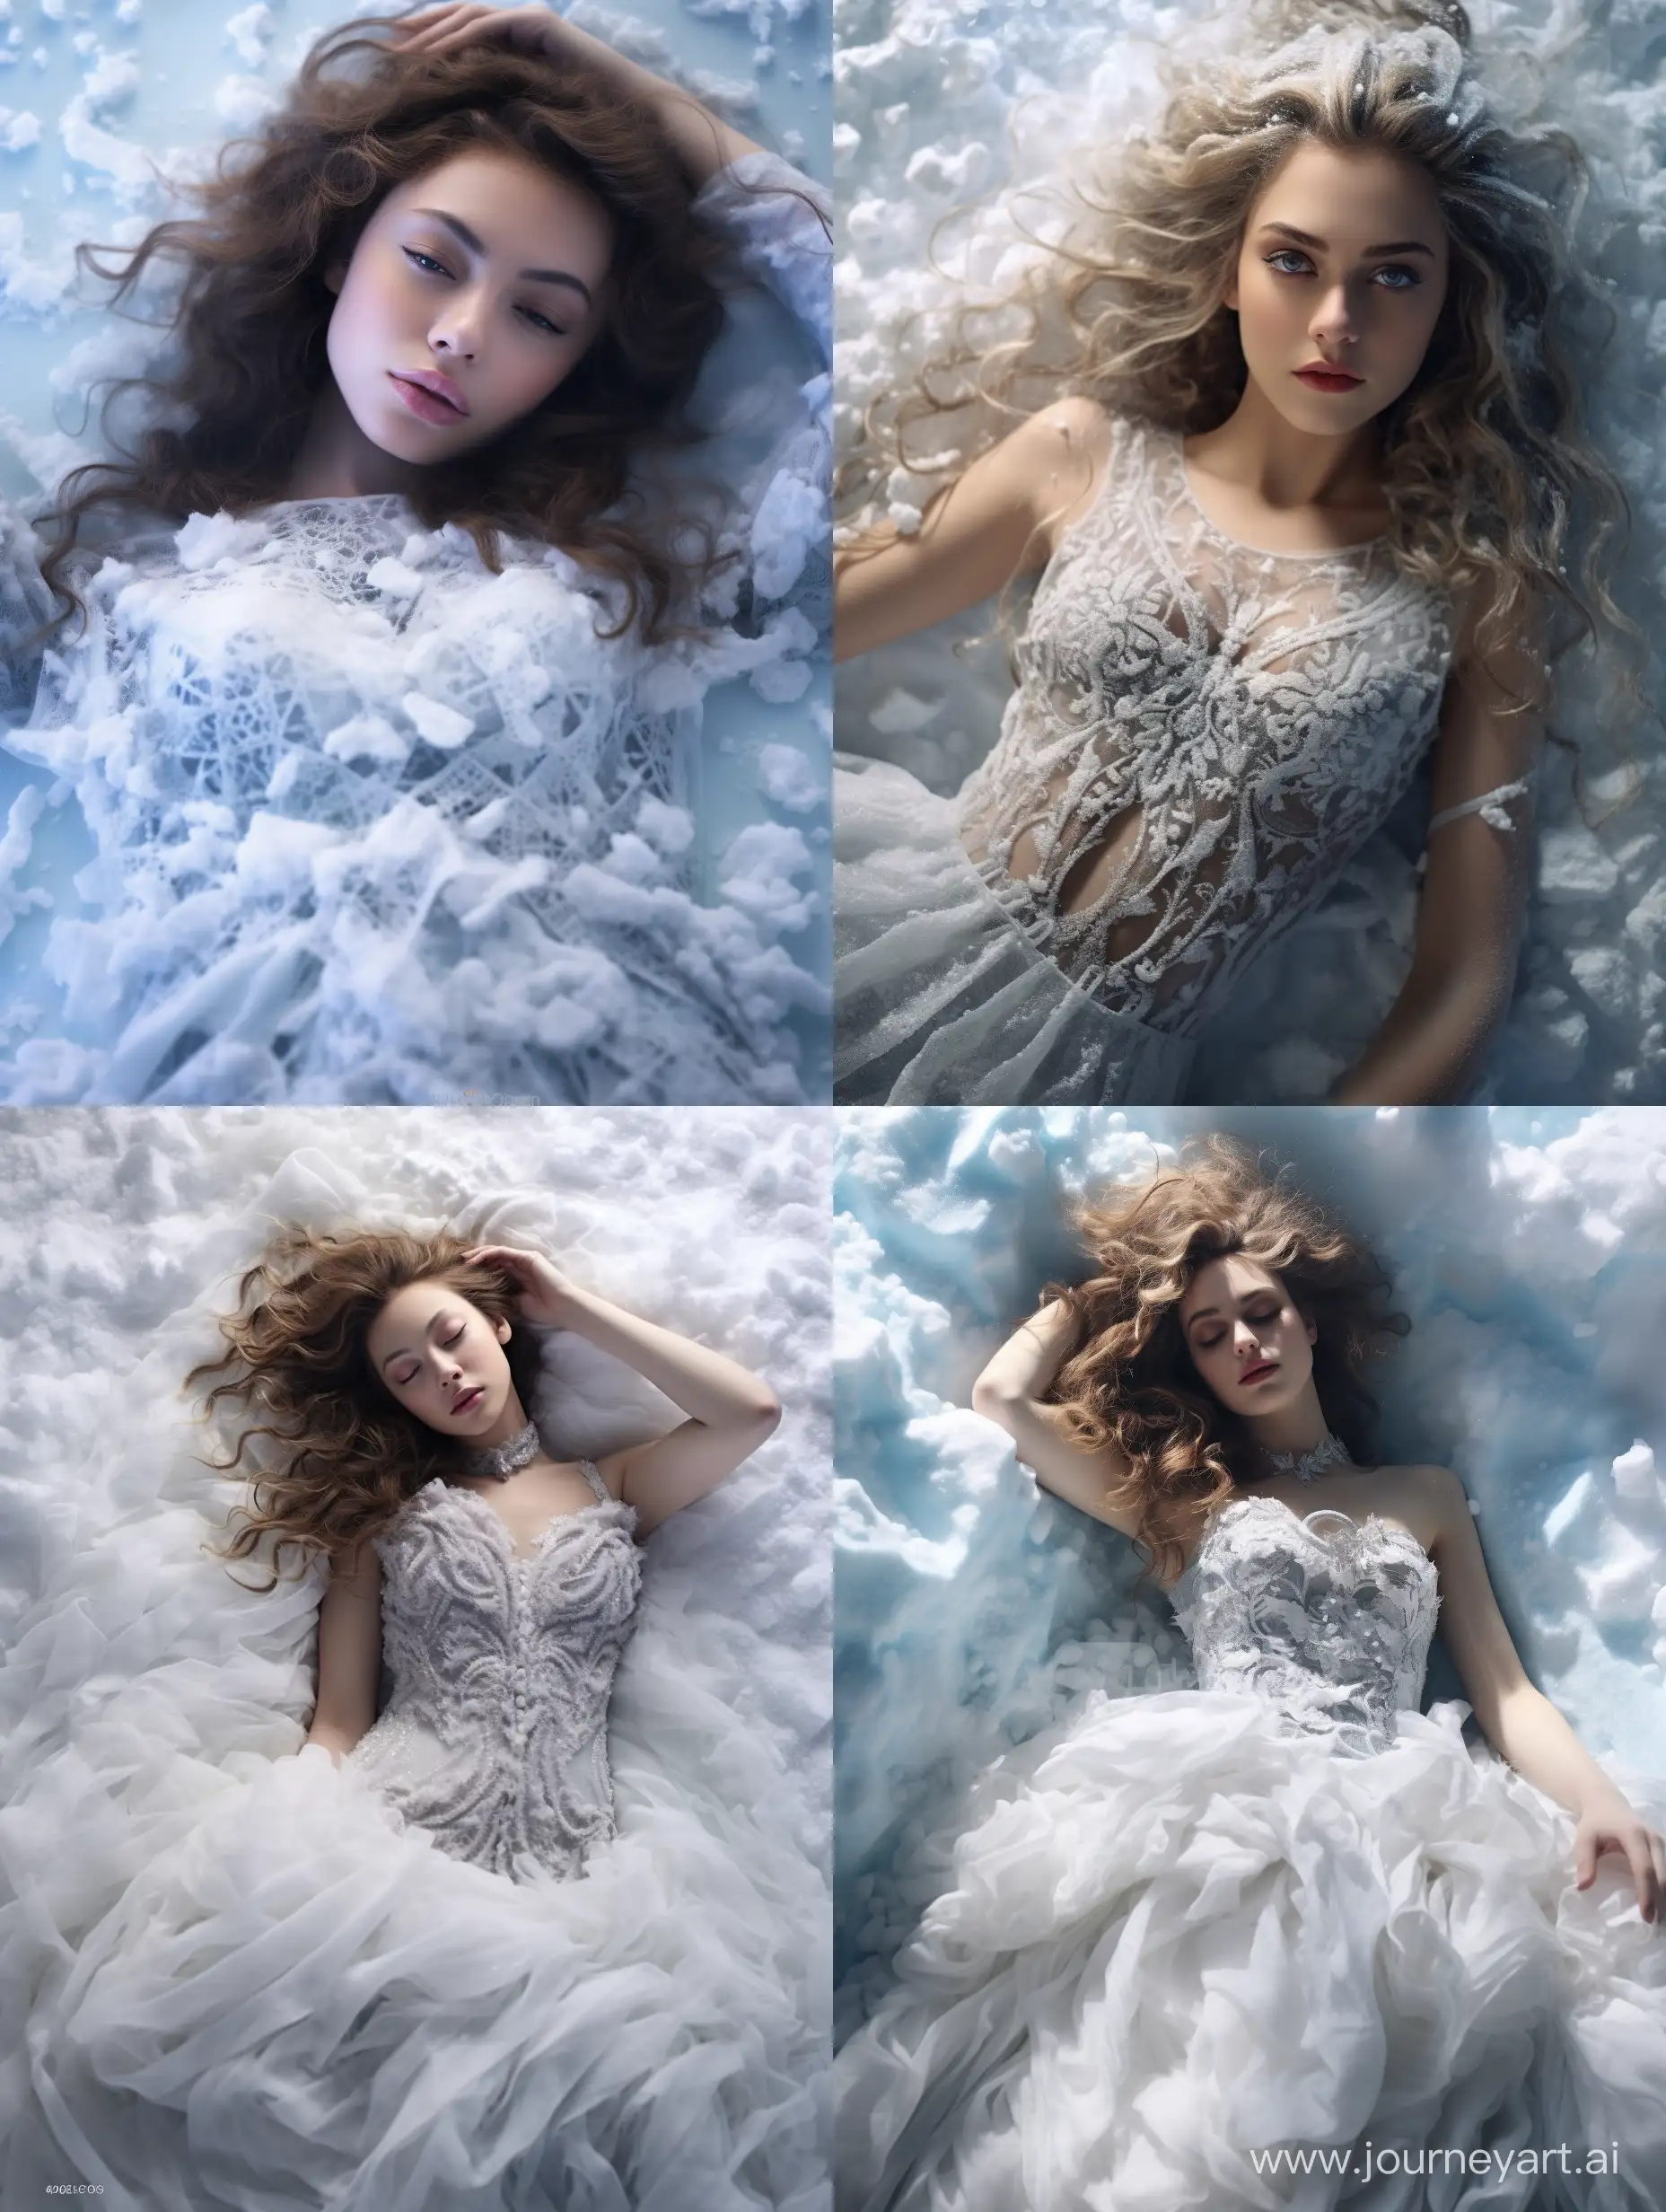 Enchanting-Snow-Queen-Lies-Amidst-a-Winter-Wonderland